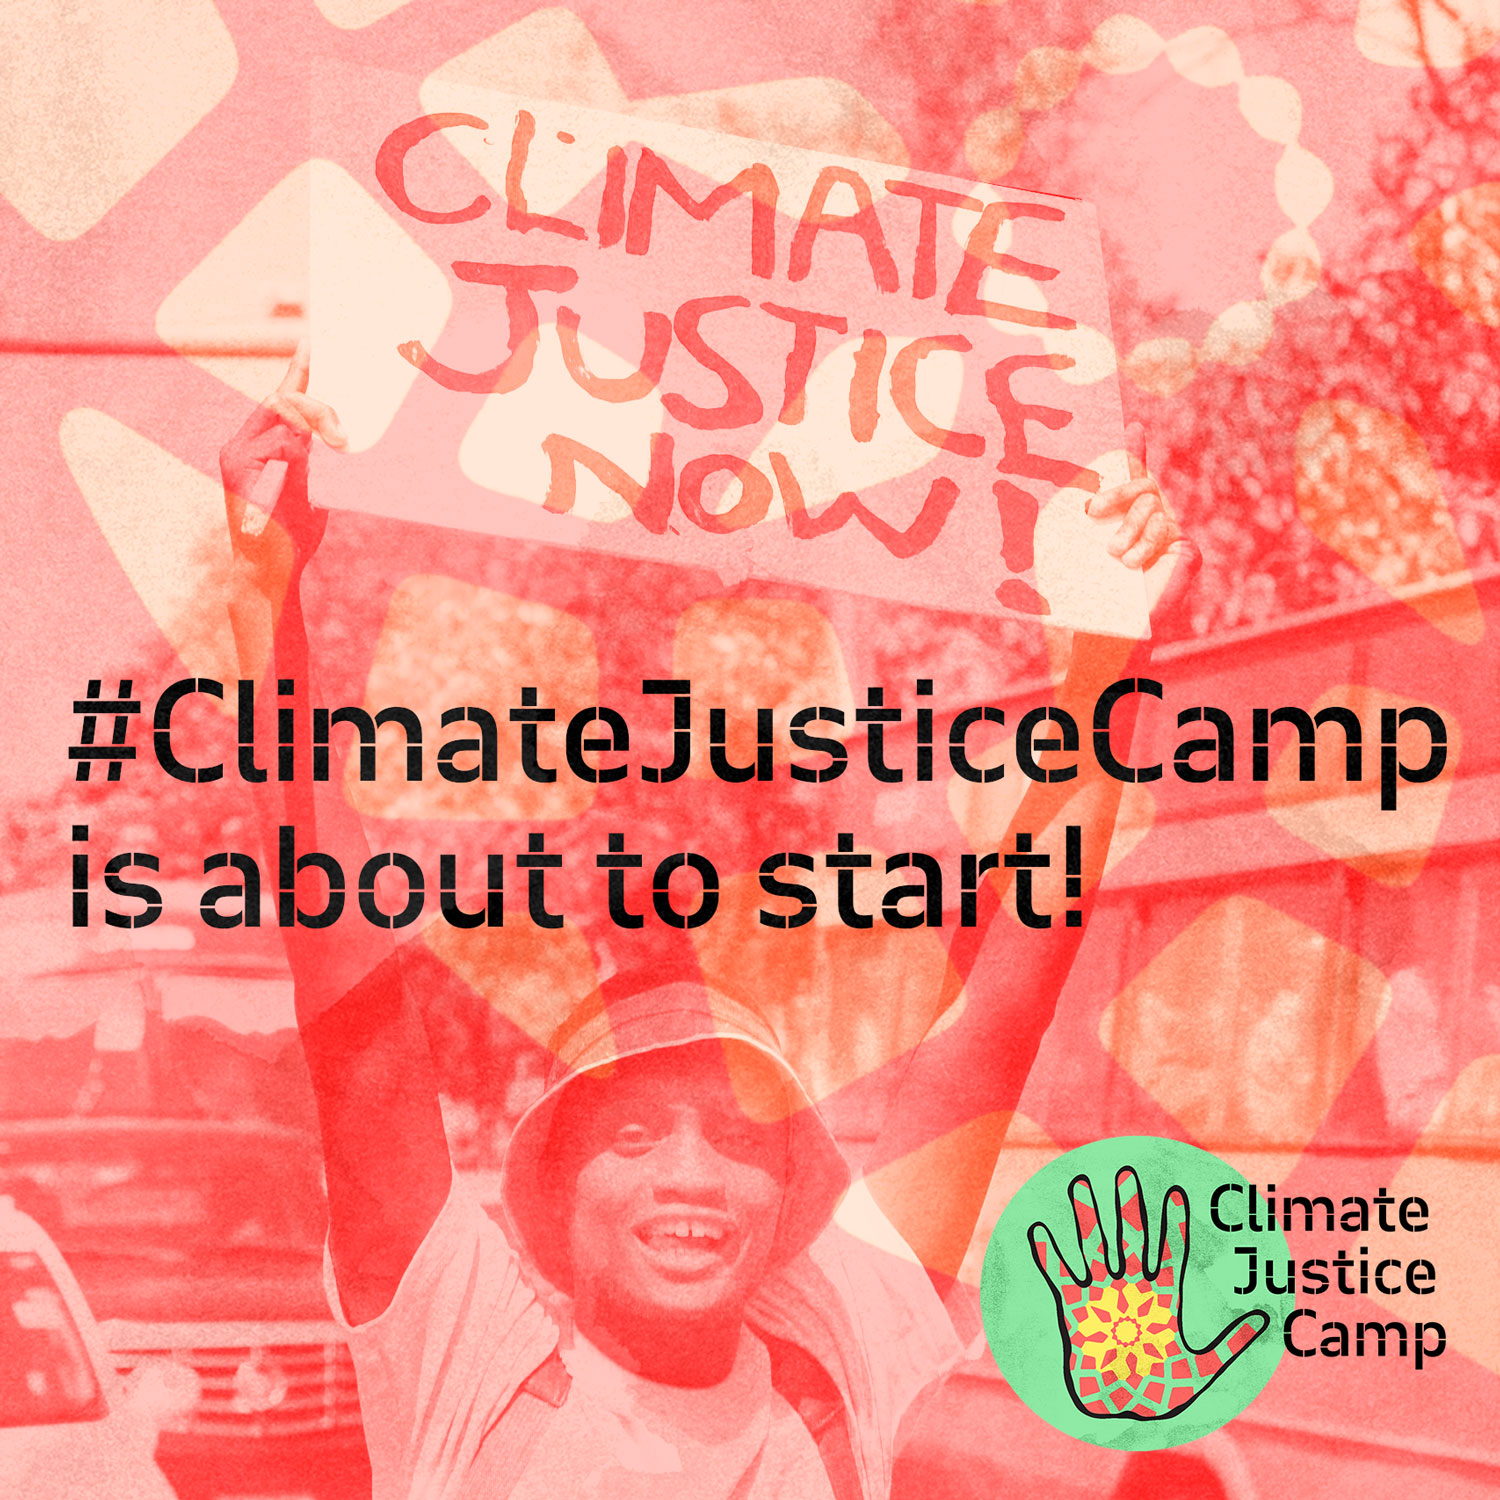 Próximo destino: Tunísia! Vem com a gente lutar por justiça climática